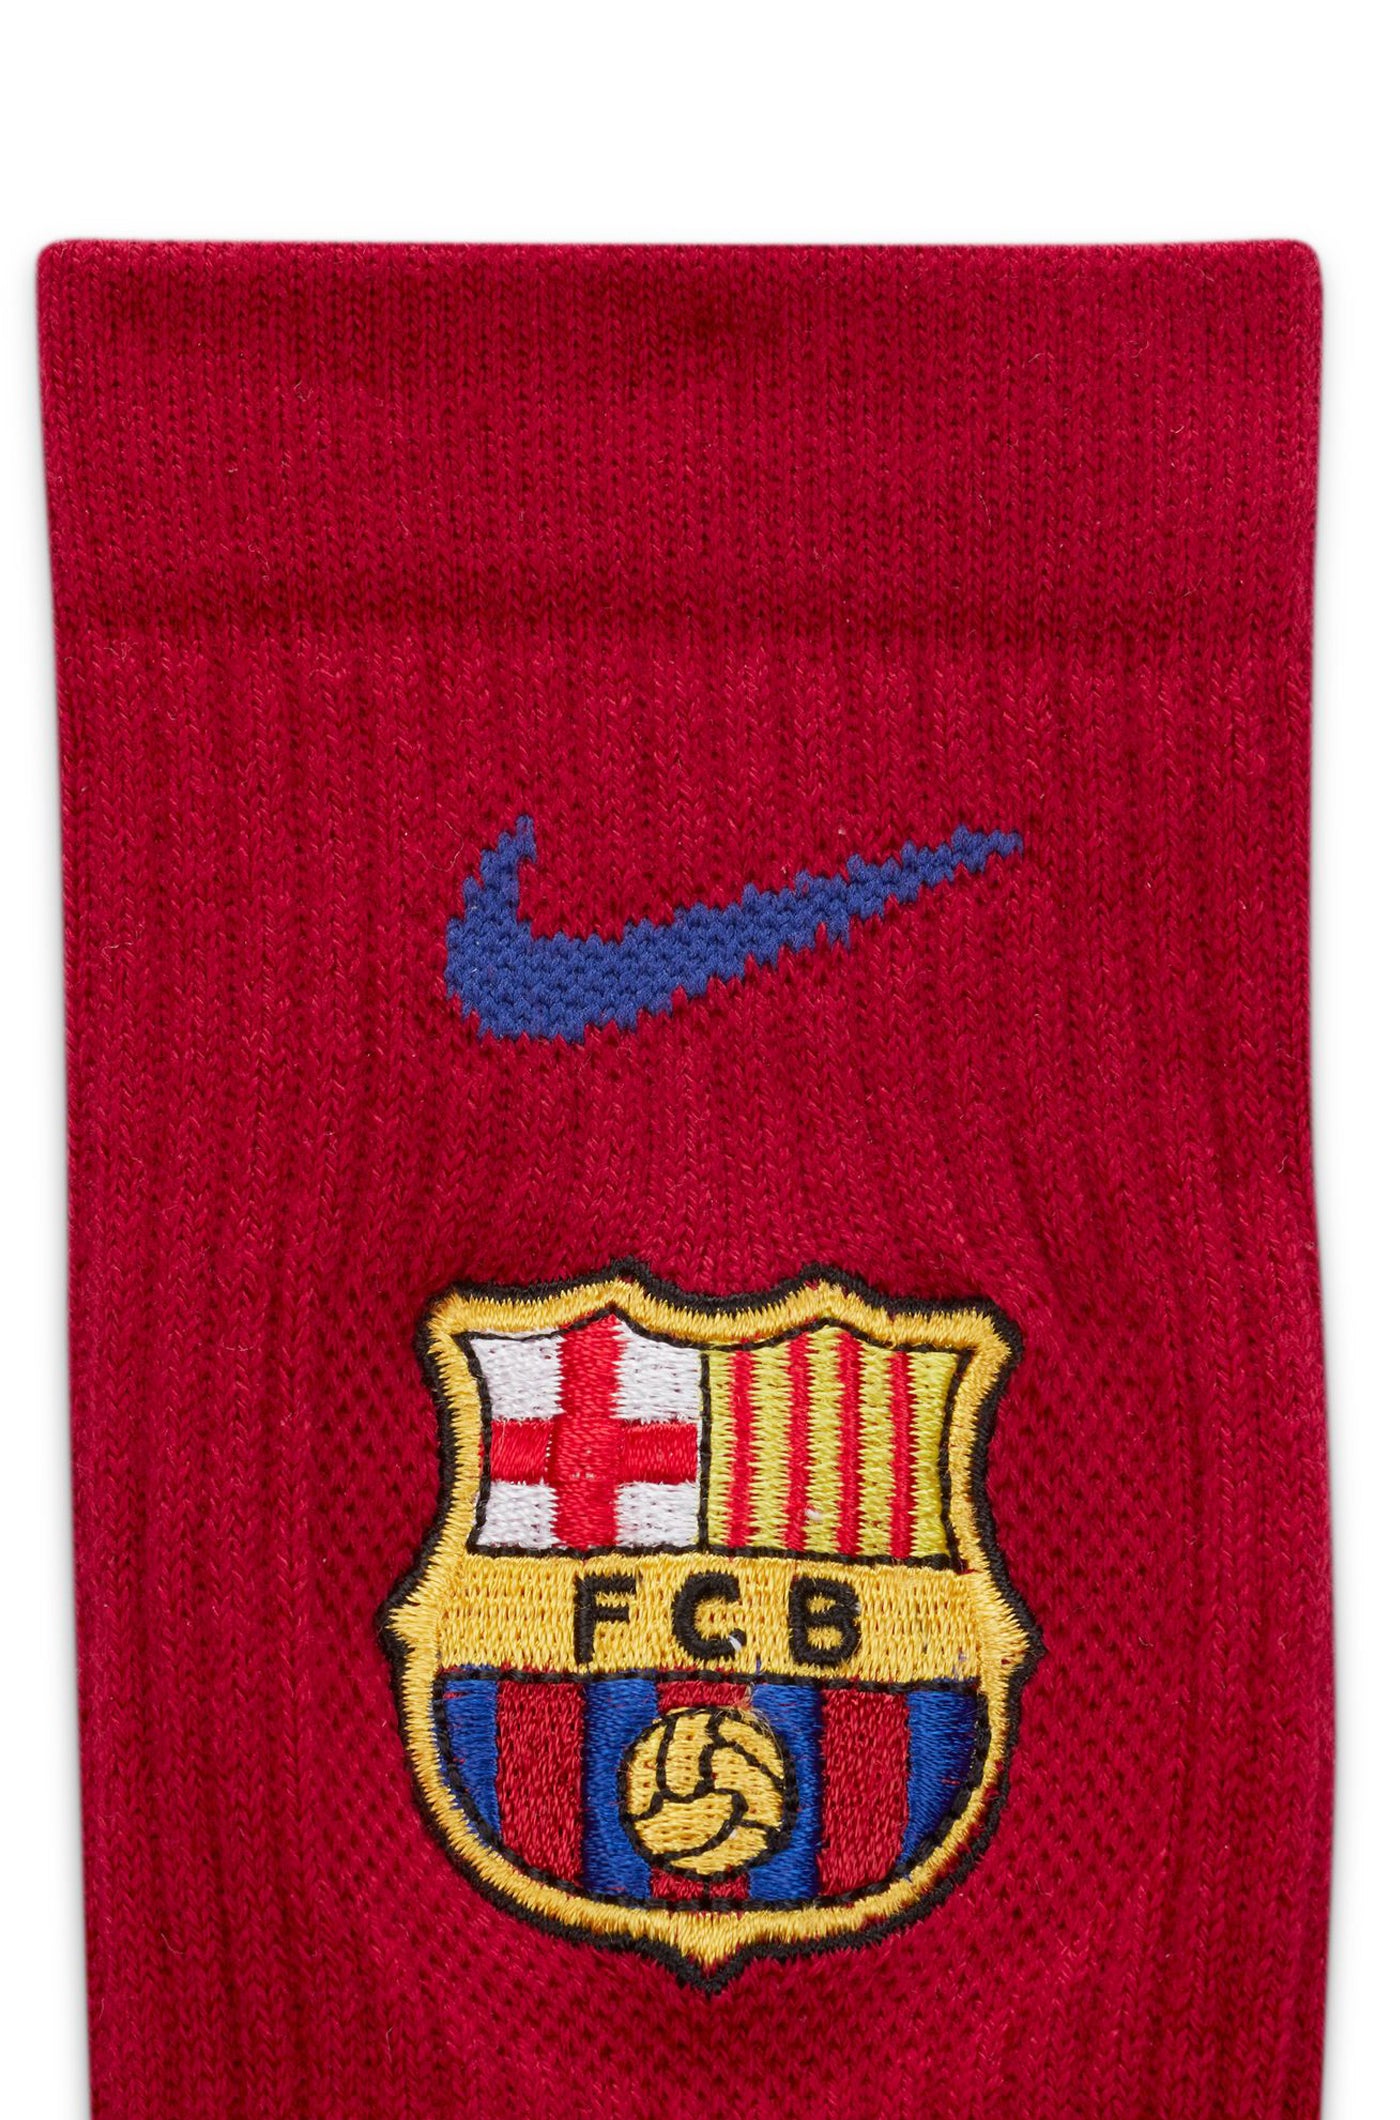 Lot de chaussettes Nike Barça